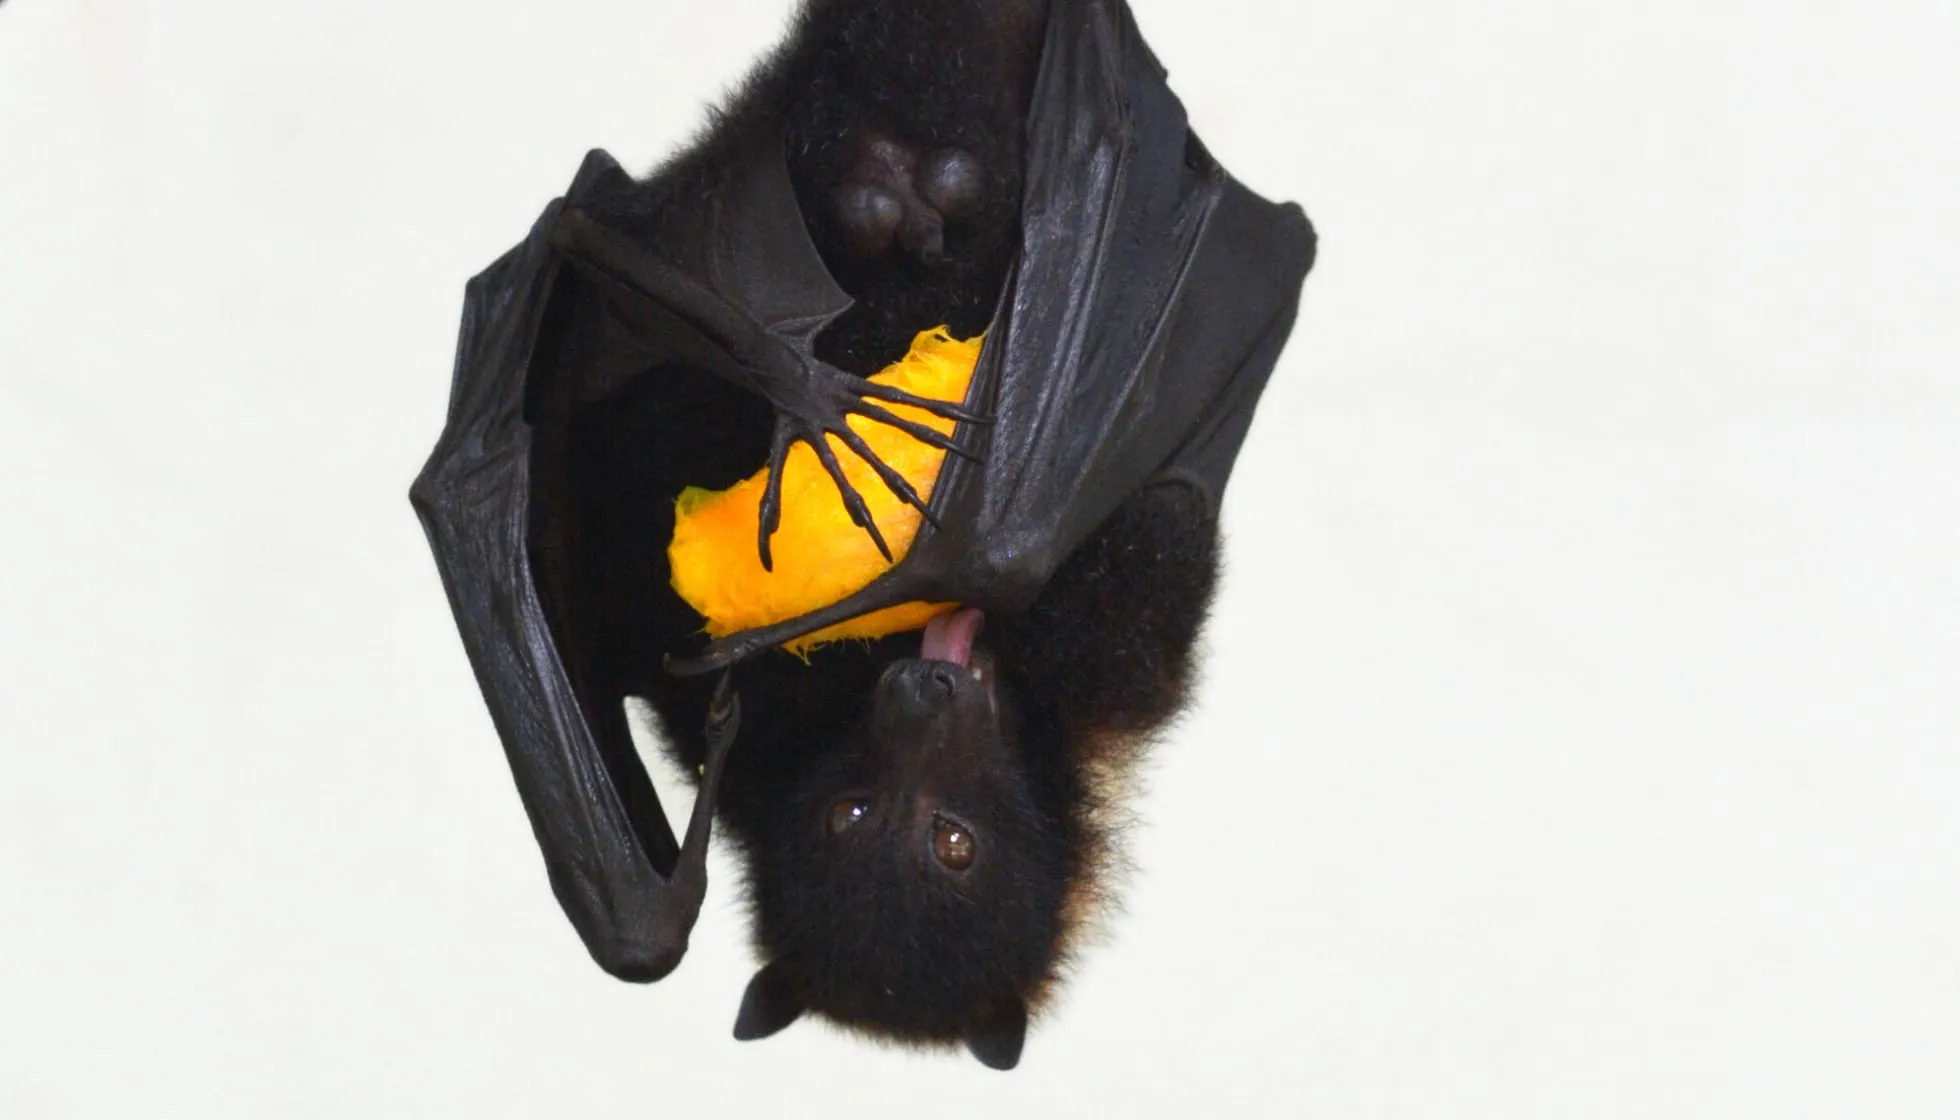 Fijian Monkey-Faced Bat